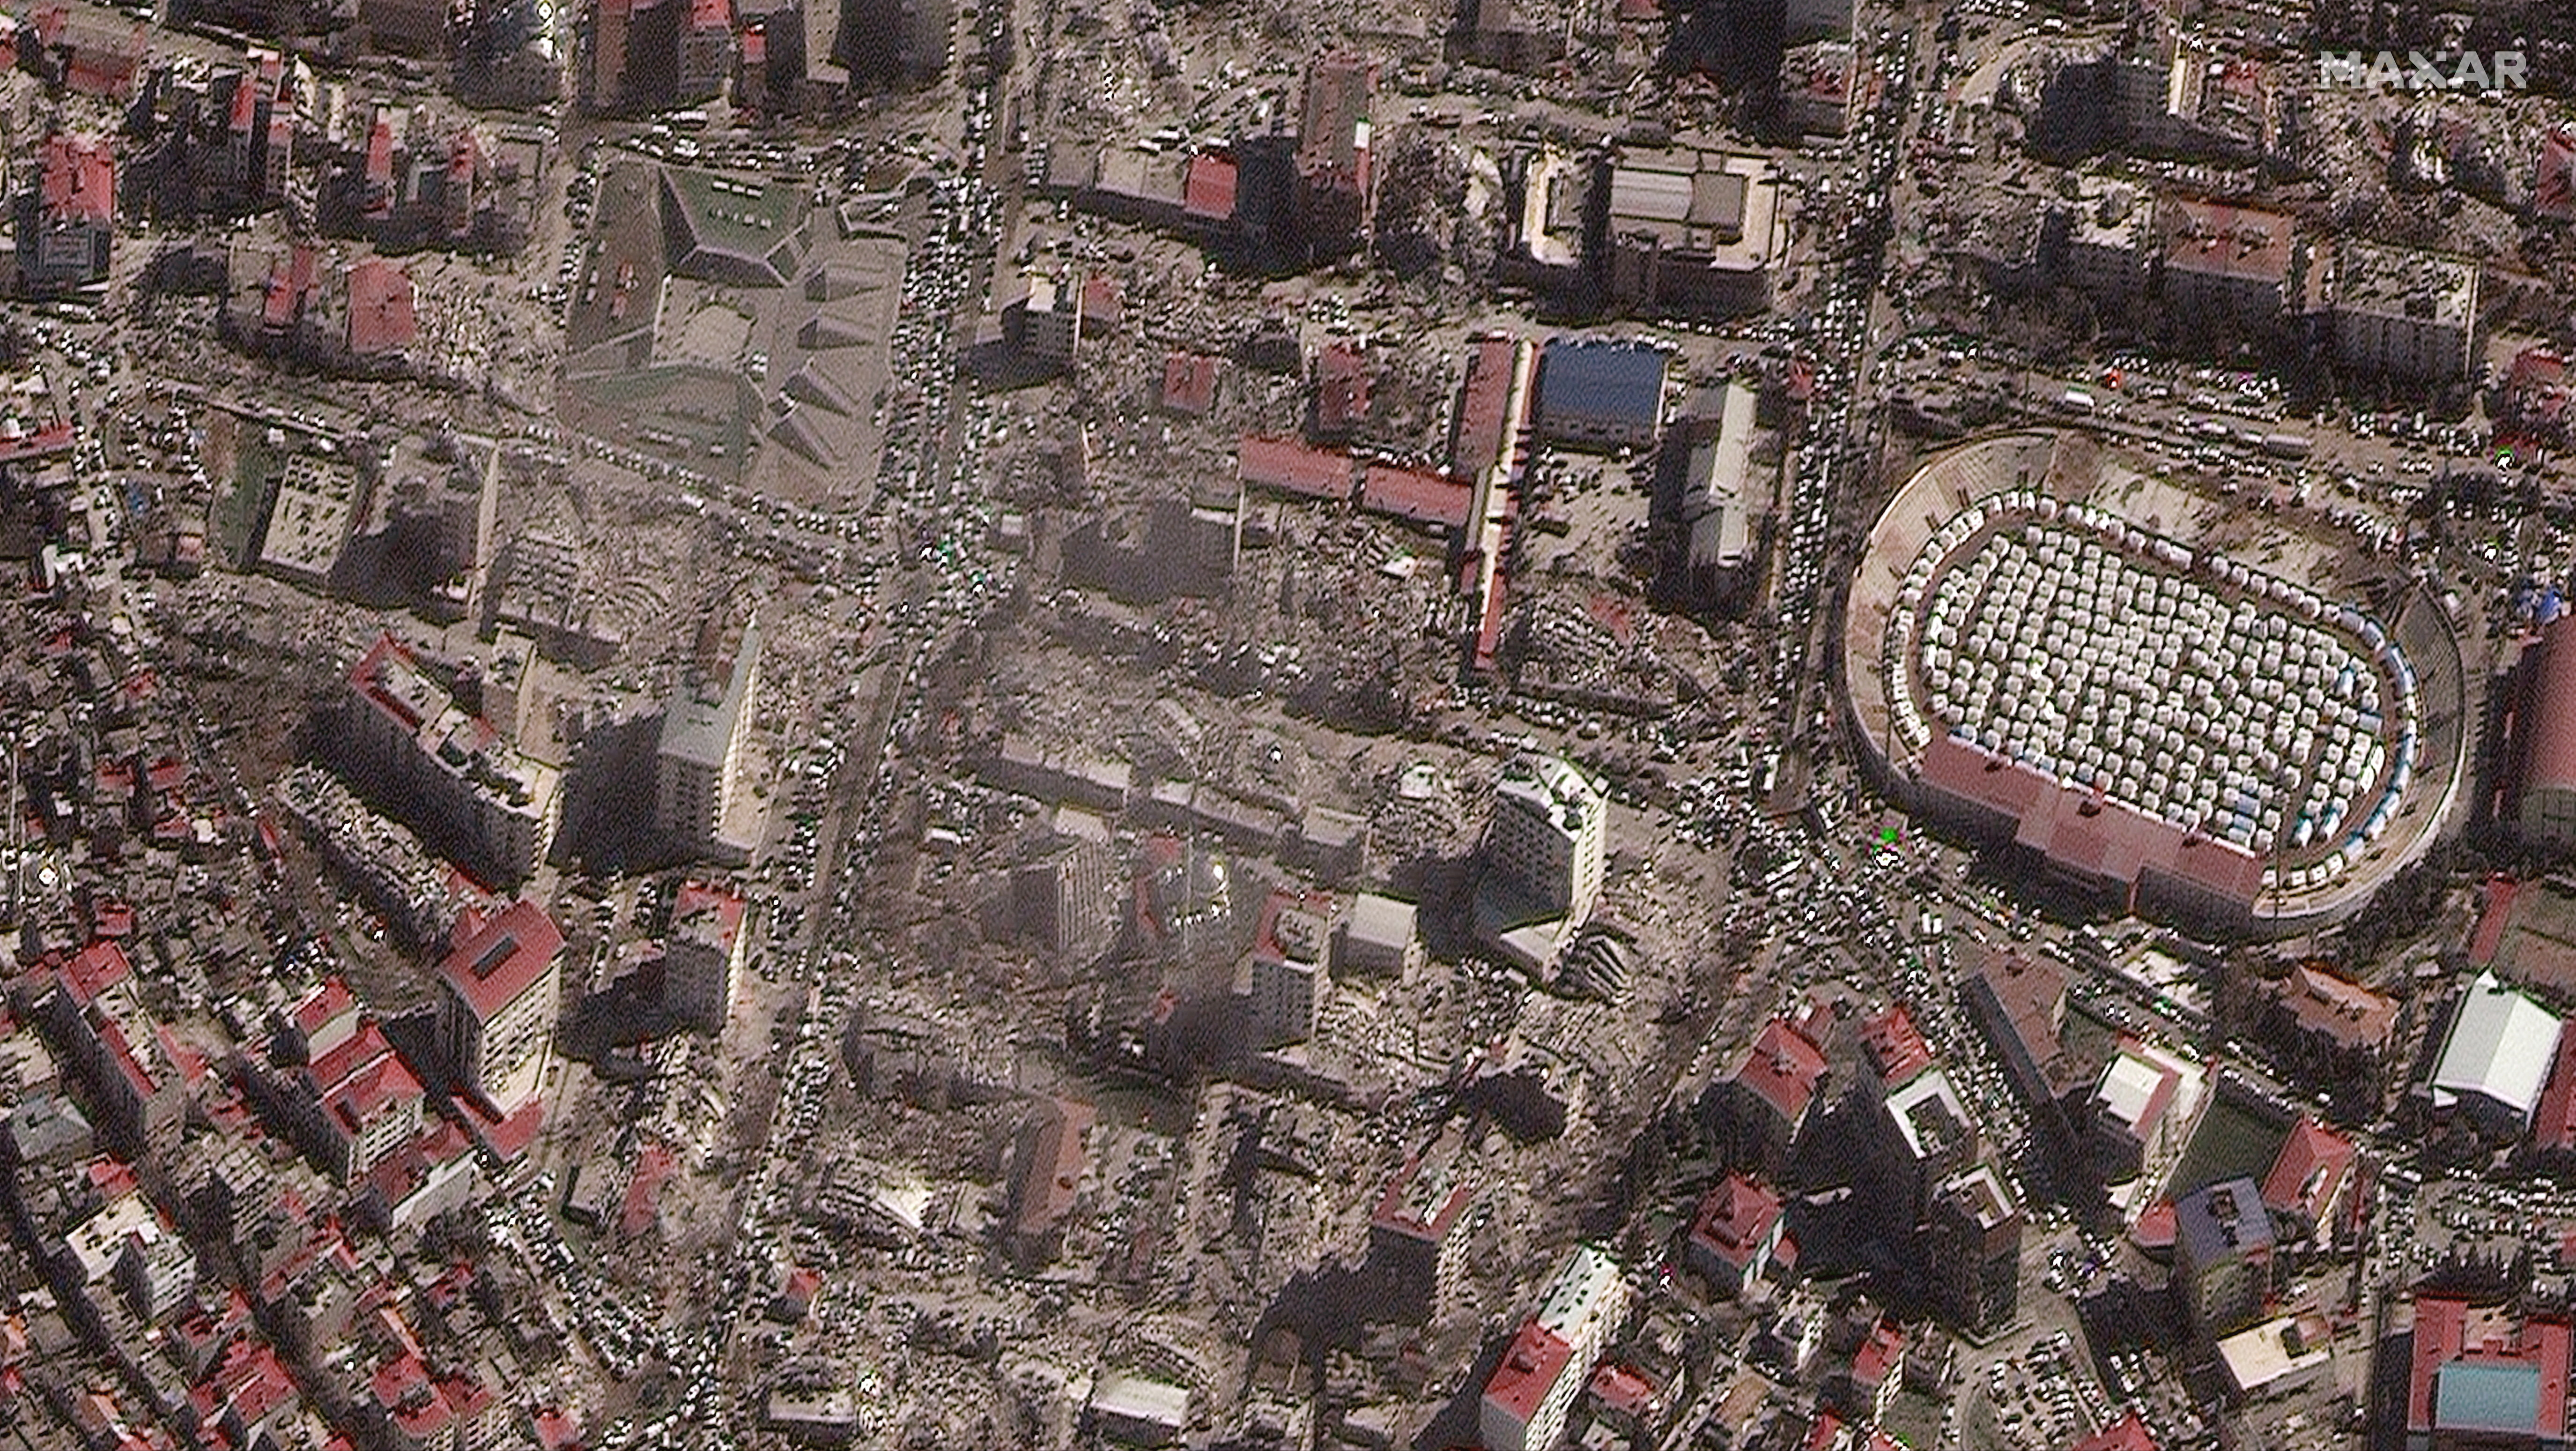 La destrucción y los refugios de emergencia en un estadio después de un terremoto en Kahramanmaras, Turquía, el 8 de febrero de 2023. Imagen satelital ©2023 Maxar Technologies/Handout via REUTERS 